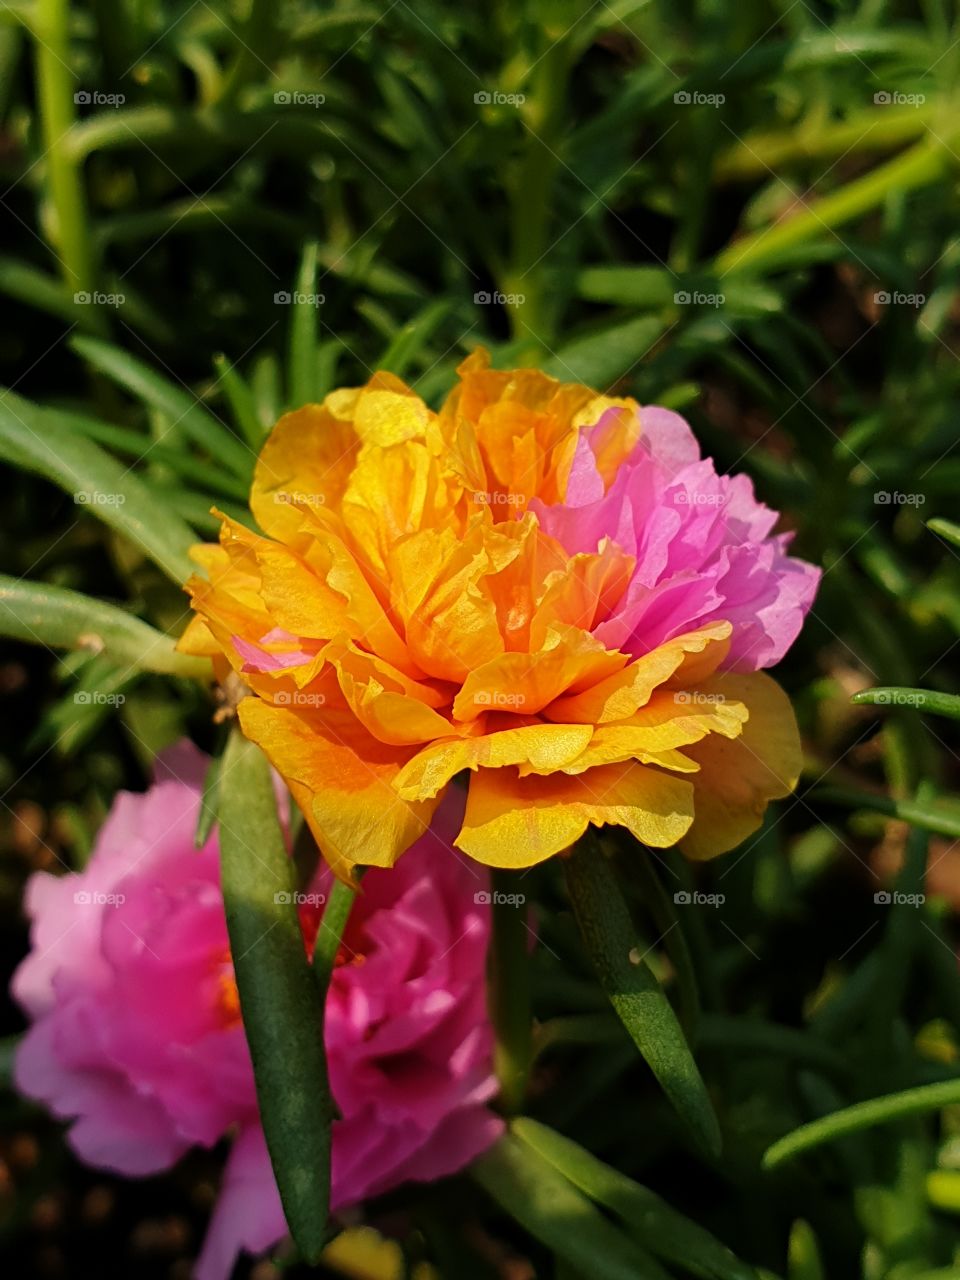 beautiful flowers in my garden